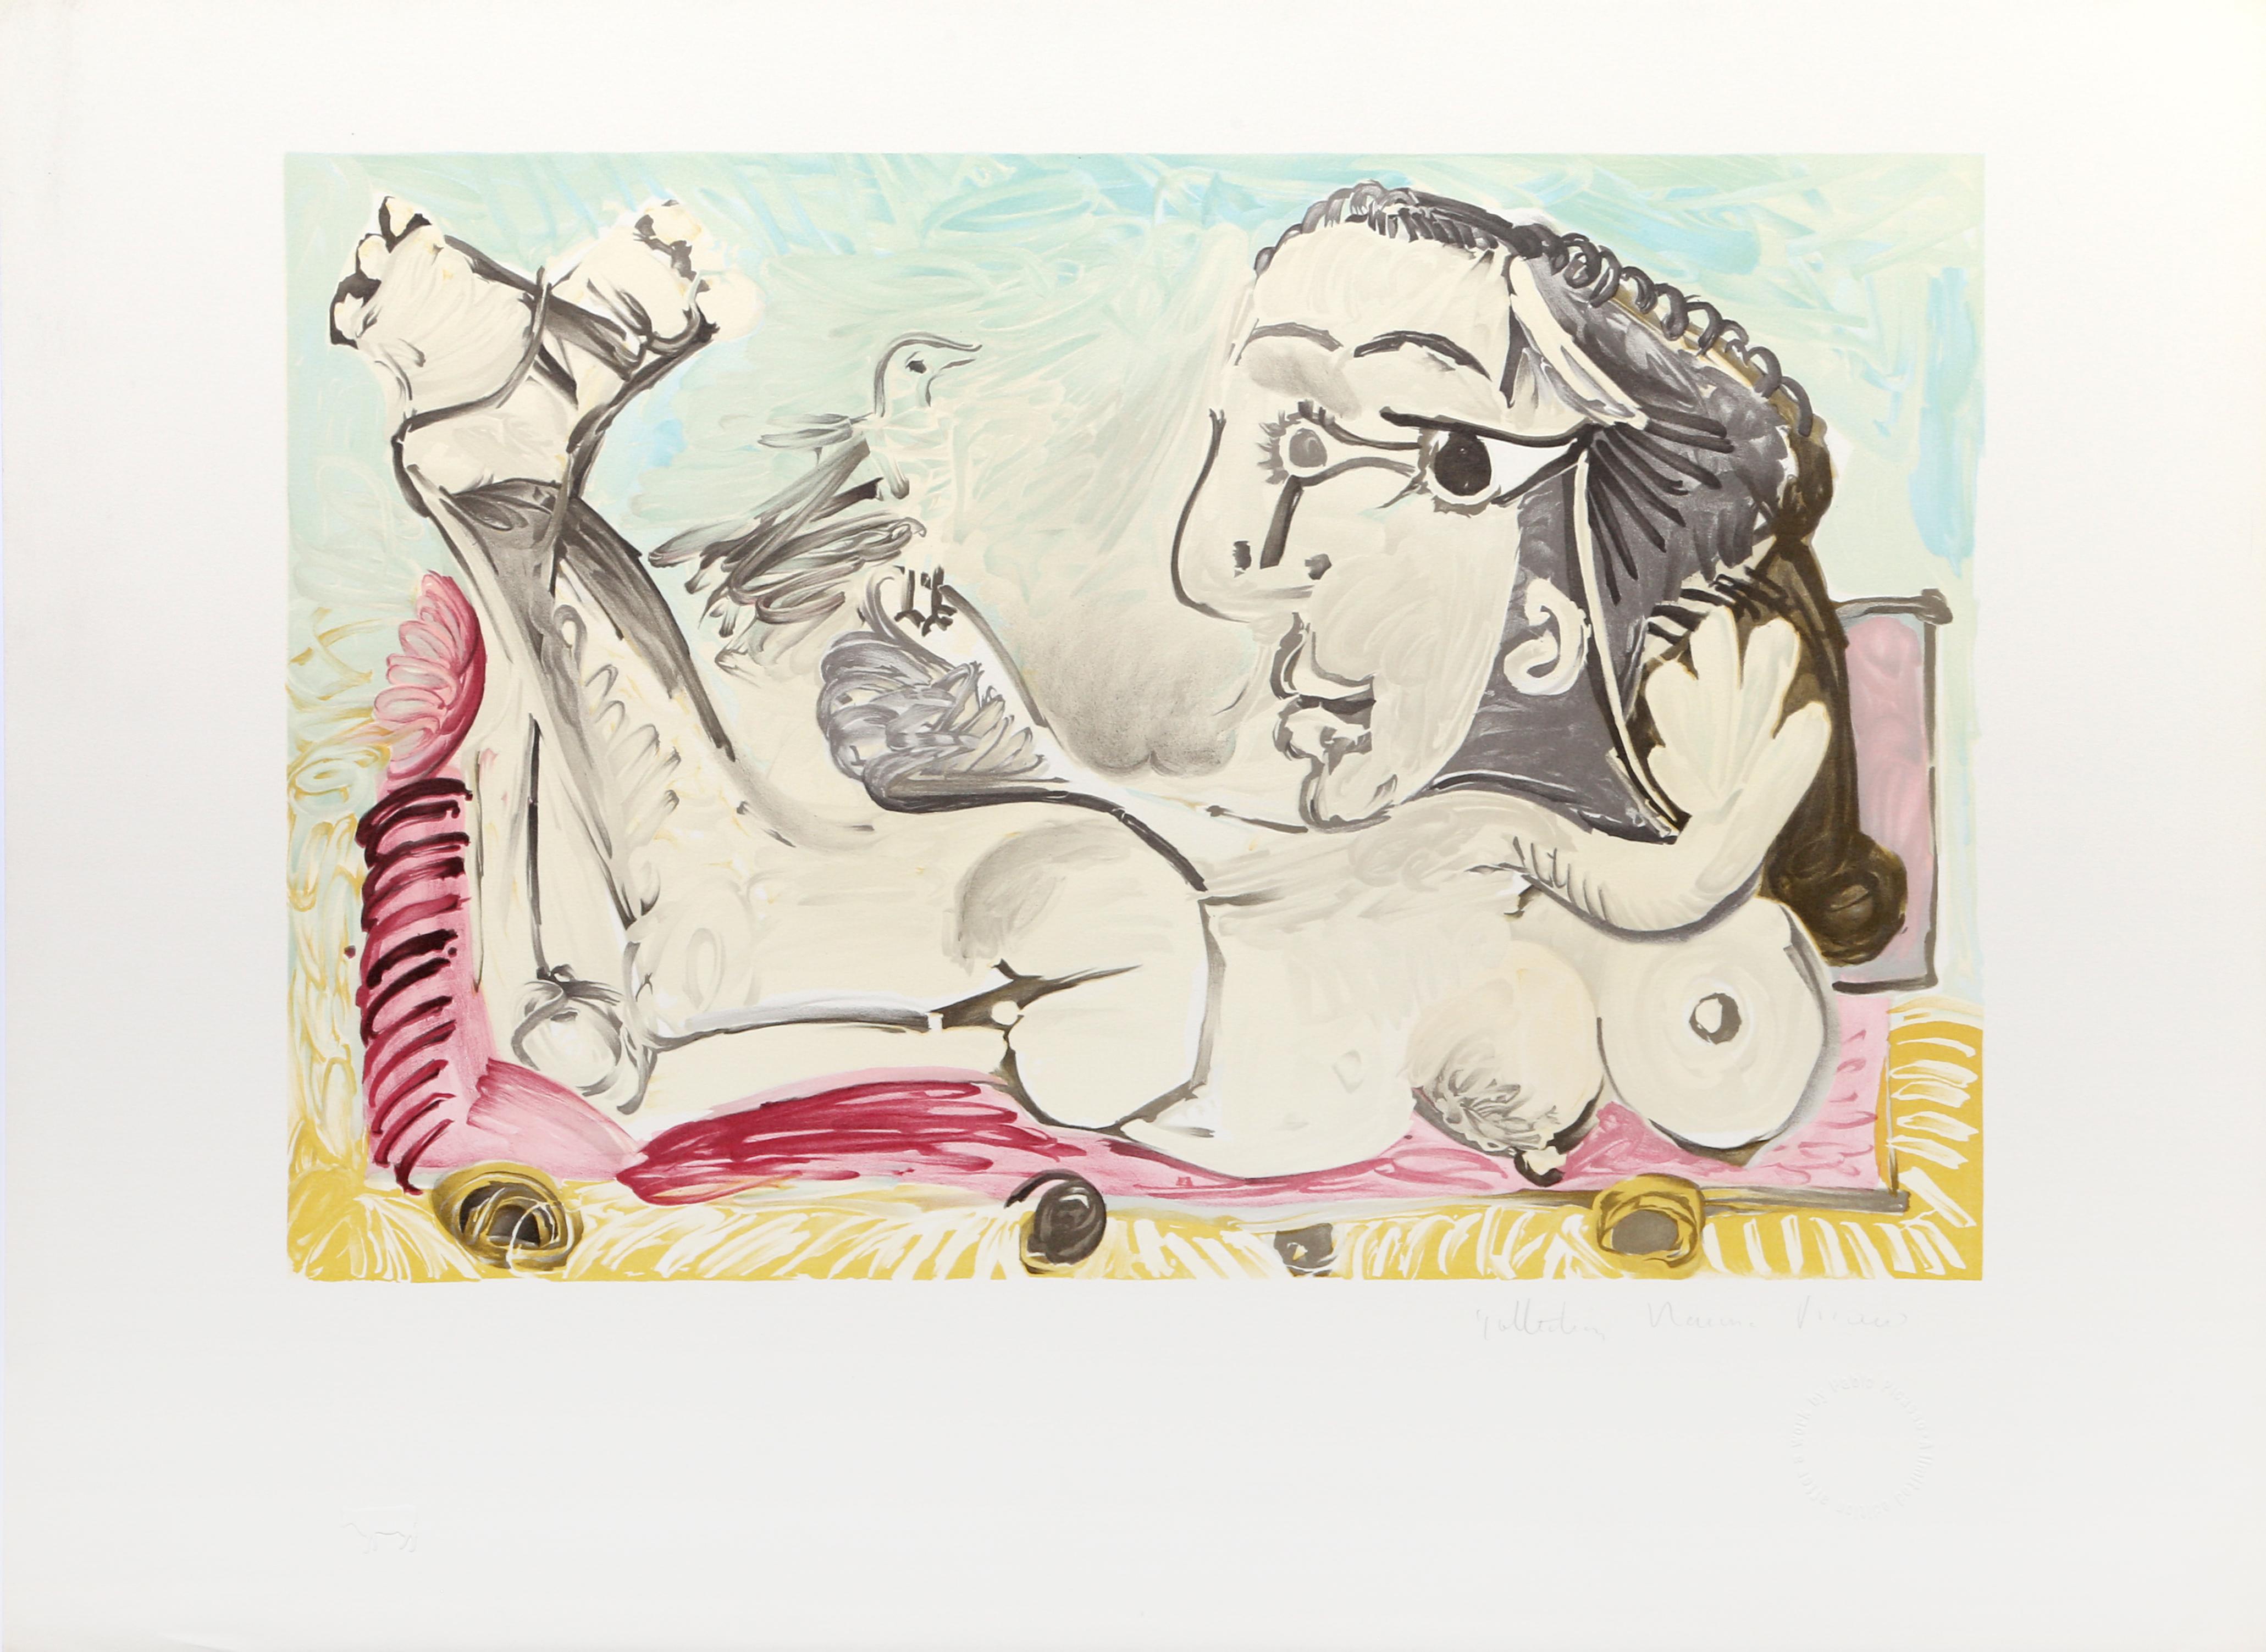 Durch die Manipulation der Perspektive schafft Pablo Picasso eine komplexe Darstellung einer nackten Frau. Seine Darstellung der weiblichen Figur umfasst mehrere Blickwinkel, die sich zu einer Reihe von Körperteilen und Posen verbinden, die alle von